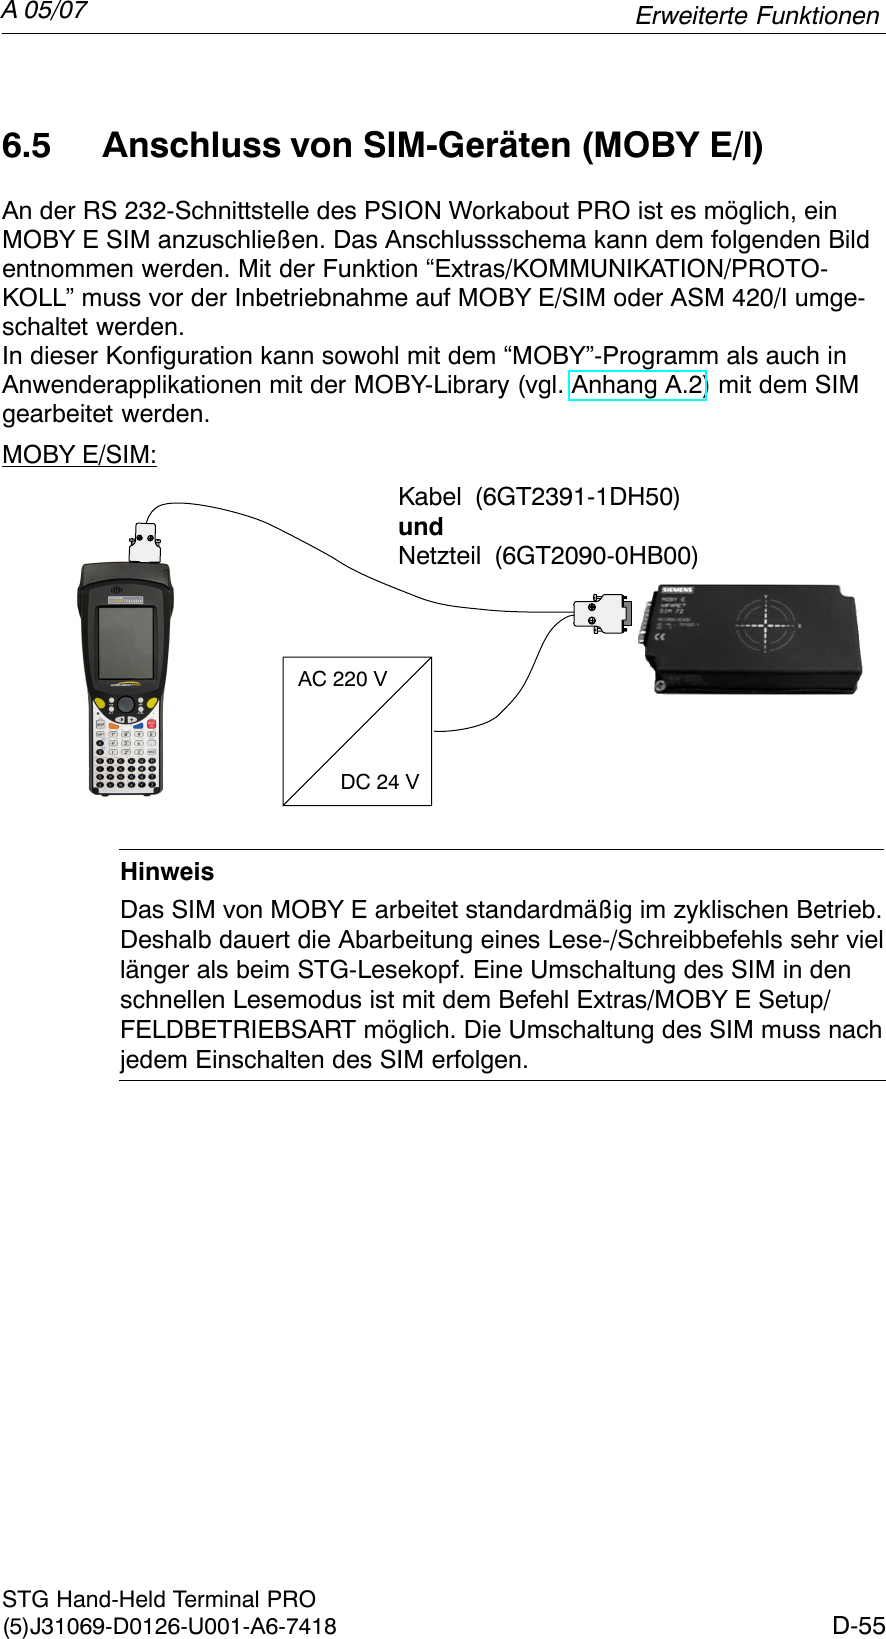 A 05/07D-55STG Hand-Held Terminal PRO(5)J31069-D0126-U001-A6-74186.5 Anschluss von SIM-Geräten (MOBY E/I)An der RS 232-Schnittstelle des PSION Workabout PRO ist es möglich, einMOBY E SIM anzuschließen. Das Anschlussschema kann dem folgenden Bildentnommen werden. Mit der Funktion “Extras/KOMMUNIKATION/PROTO-KOLL” muss vor der Inbetriebnahme auf MOBY E/SIM oder ASM 420/I umge-schaltet werden.In dieser Konfiguration kann sowohl mit dem “MOBY”-Programm als auch inAnwenderapplikationen mit der MOBY-Library (vgl. Anhang A.2) mit dem SIMgearbeitet werden.MOBY E/SIM:AC 220 VDC 24 VKabel (6GT2391-1DH50)undNetzteil (6GT2090-0HB00)HinweisDas SIM von MOBY E arbeitet standardmäßig im zyklischen Betrieb.Deshalb dauert die Abarbeitung eines Lese-/Schreibbefehls sehr viellänger als beim STG-Lesekopf. Eine Umschaltung des SIM in denschnellen Lesemodus ist mit dem Befehl Extras/MOBY E Setup/FELDBETRIEBSART möglich. Die Umschaltung des SIM muss nachjedem Einschalten des SIM erfolgen.Erweiterte Funktionen